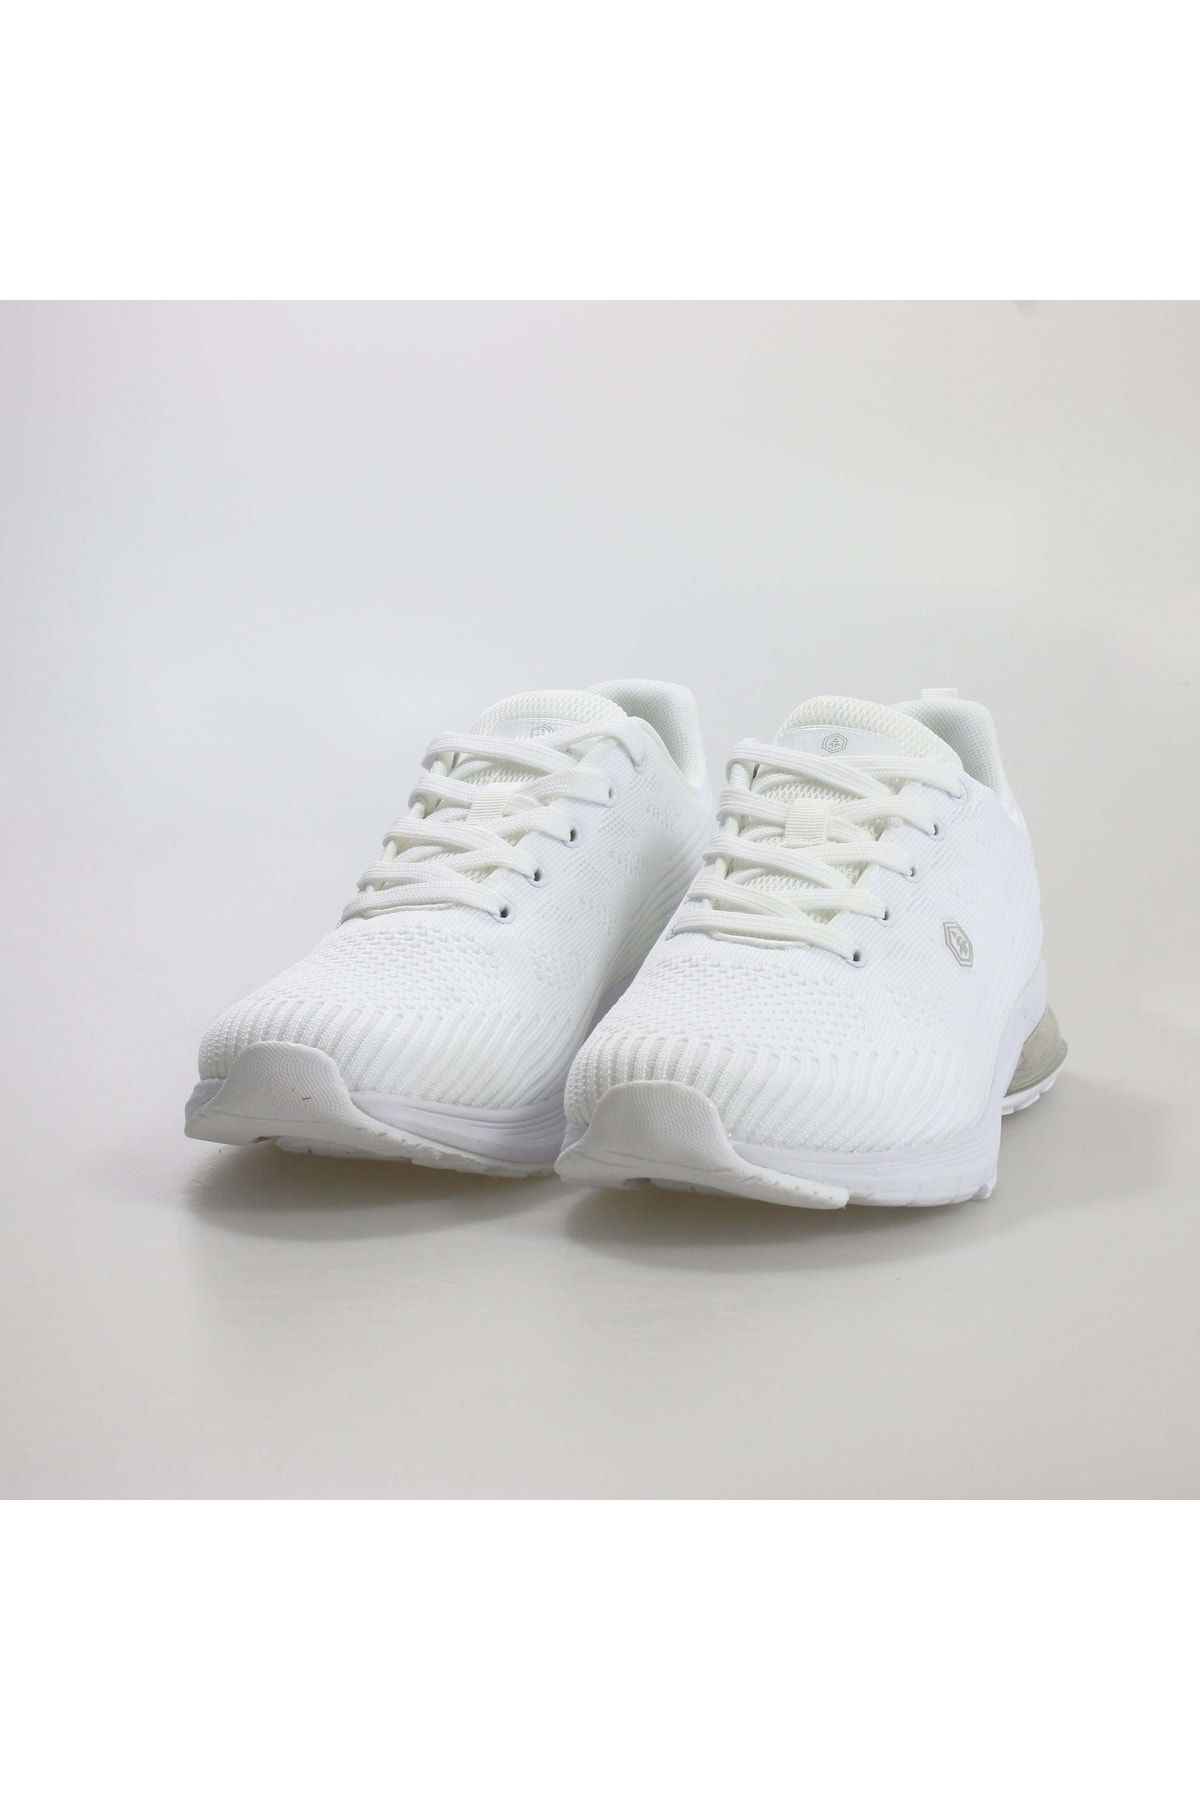 Hammer Jack Ellıot M Spor Ayakkabı Beyaz Erkek Günlük Ayakkabı